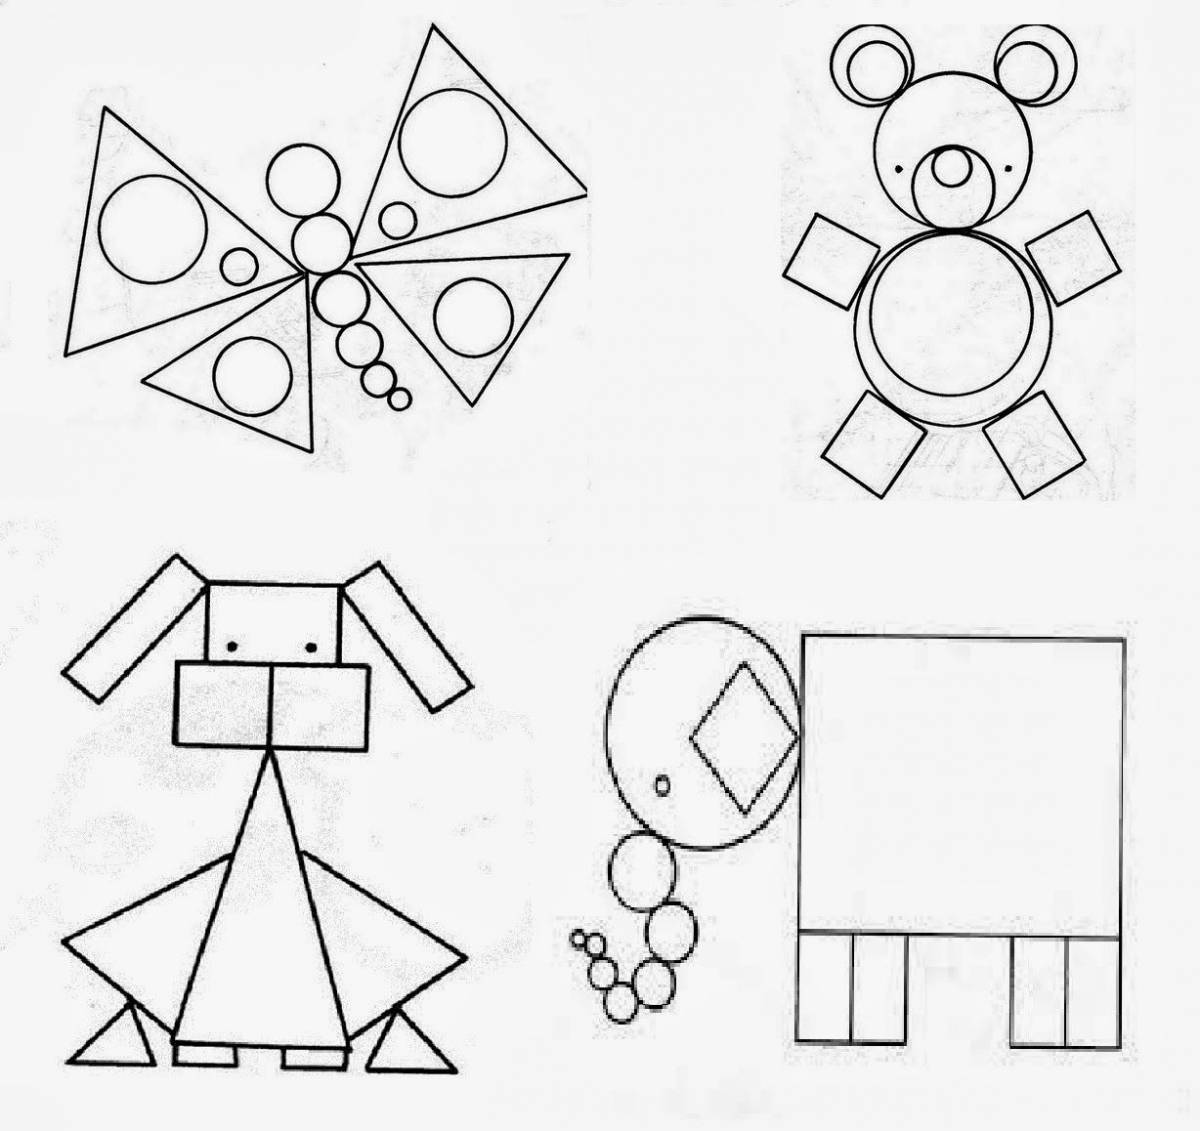 Увлекательная раскраска геометрических фигур для дошкольников